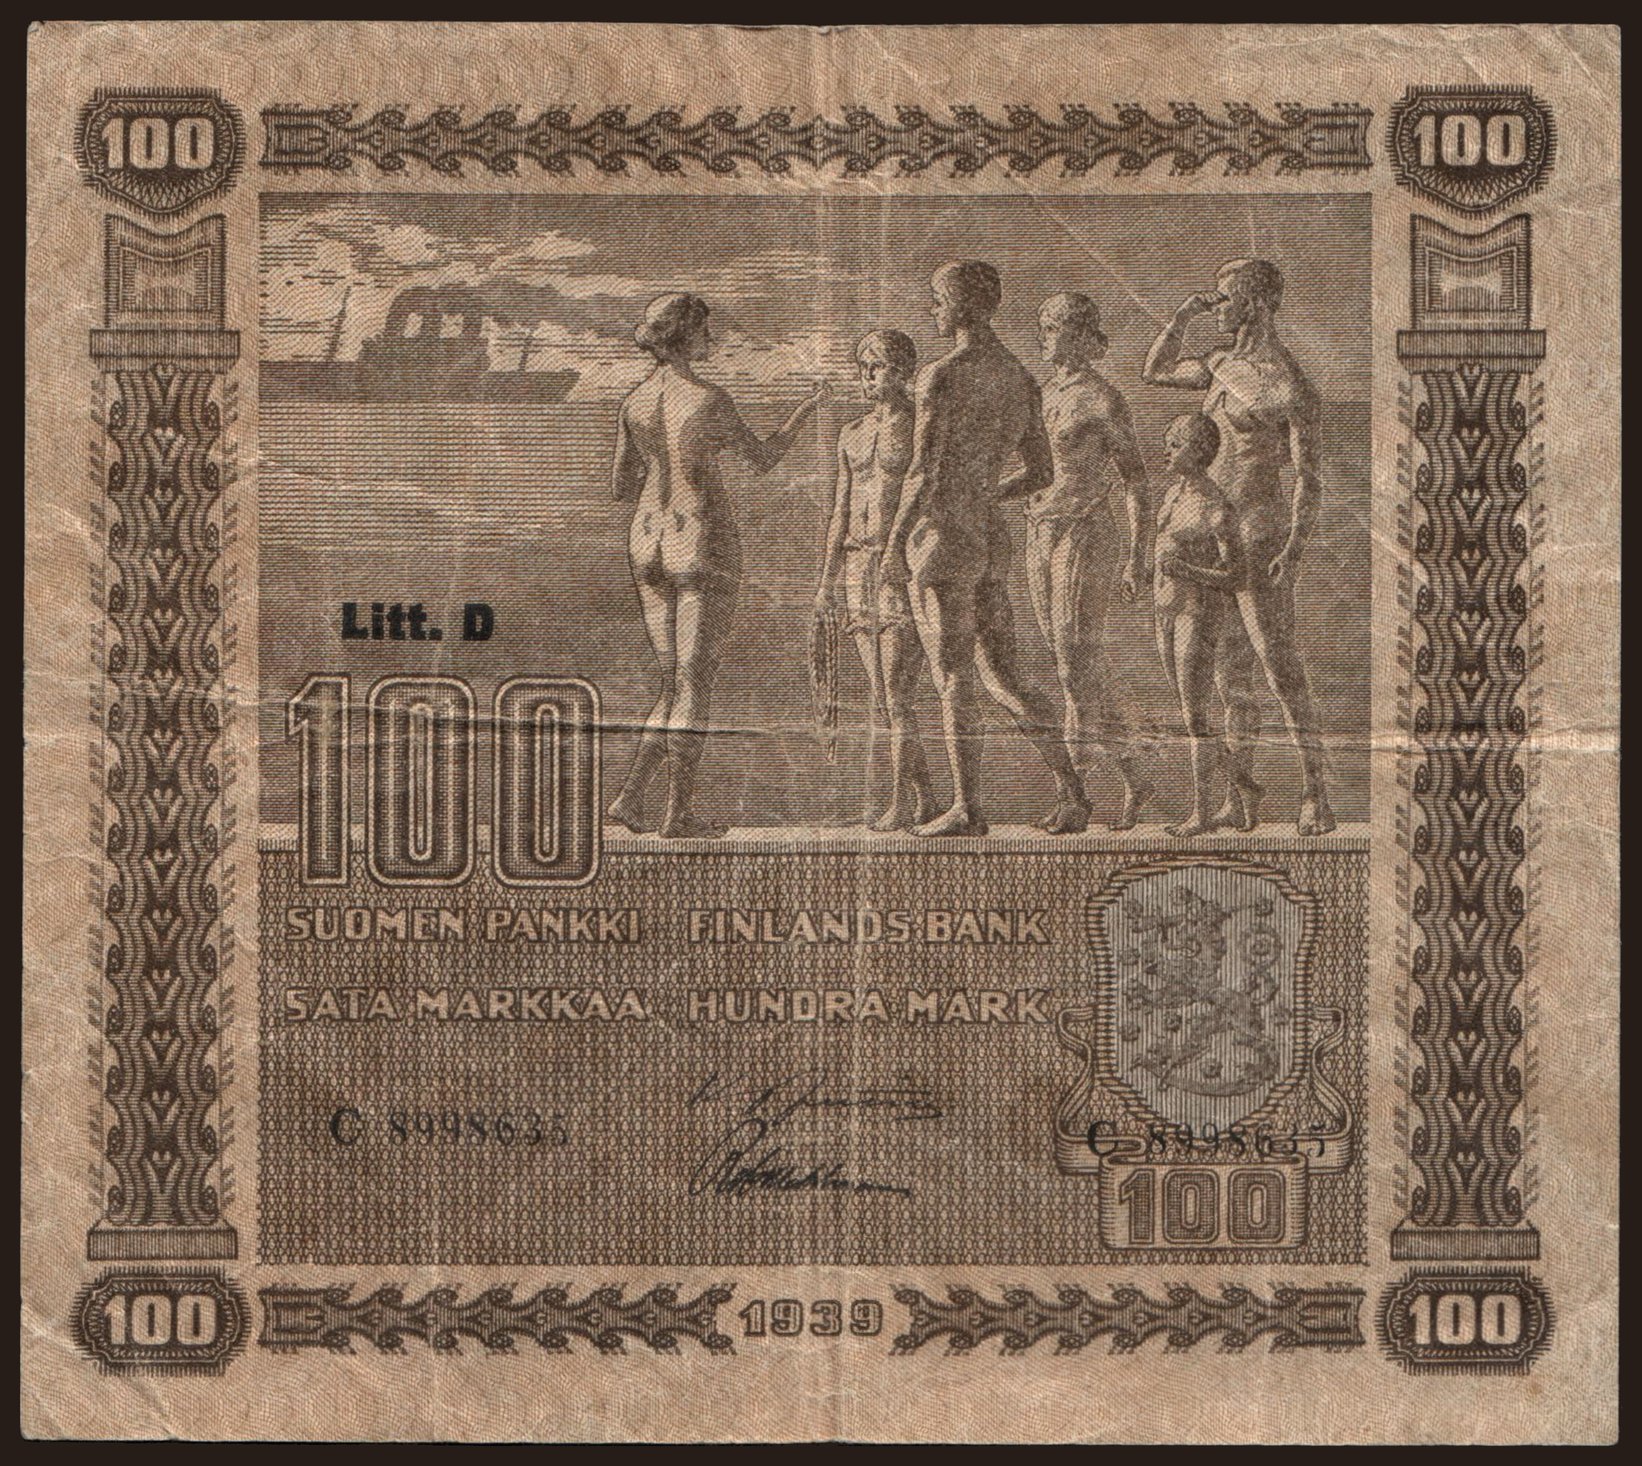 100 markkaa, 1939, Litt. D